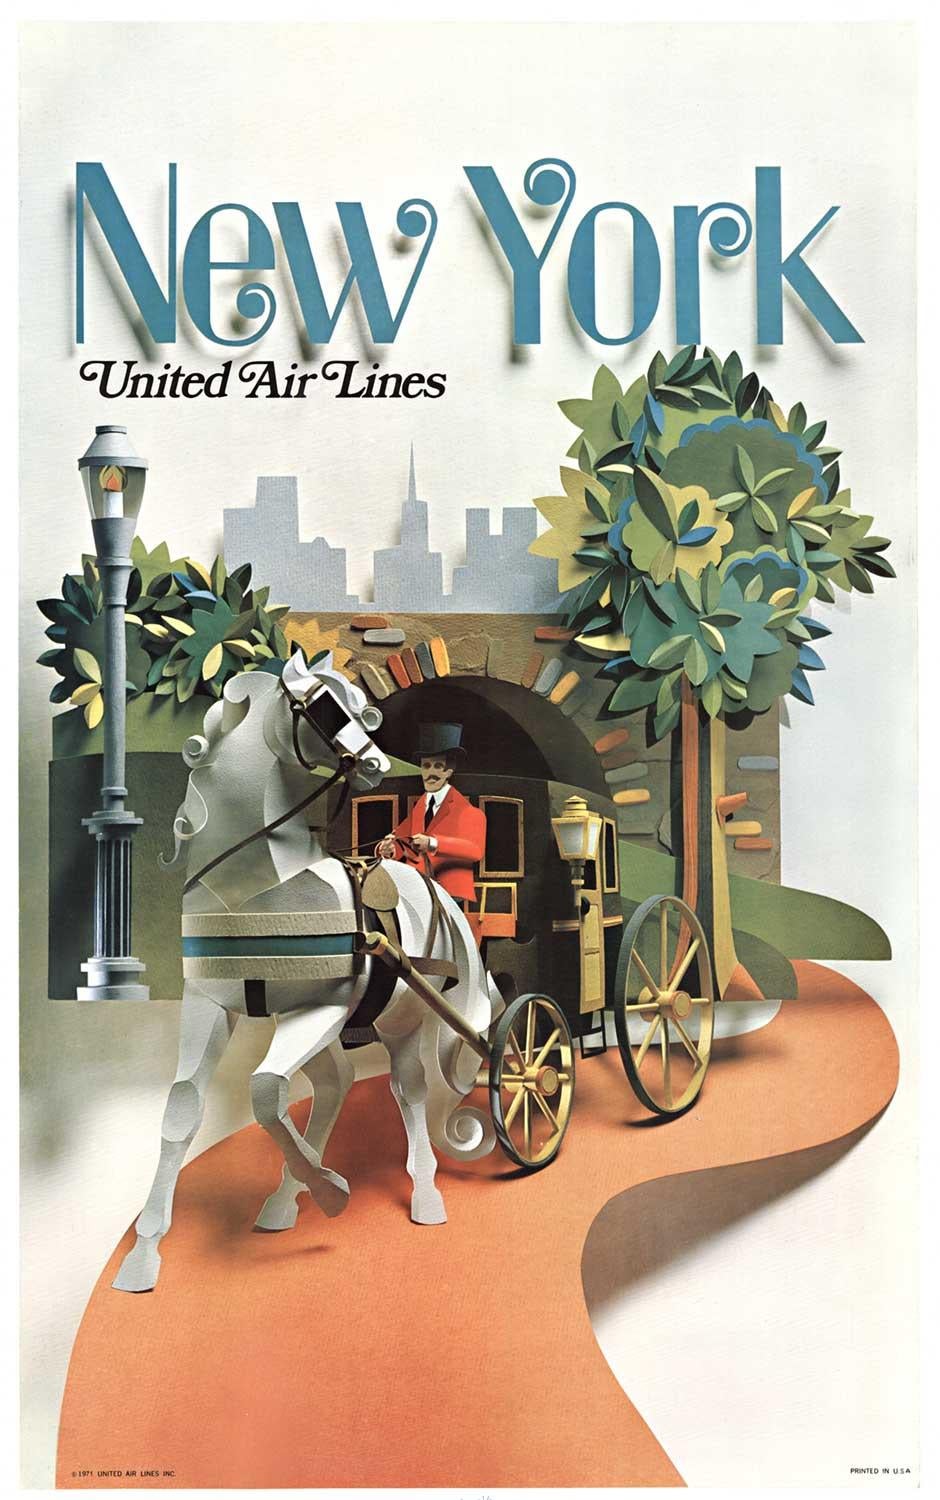 Original "New York United Airlines" vintage travel poster  Central Park